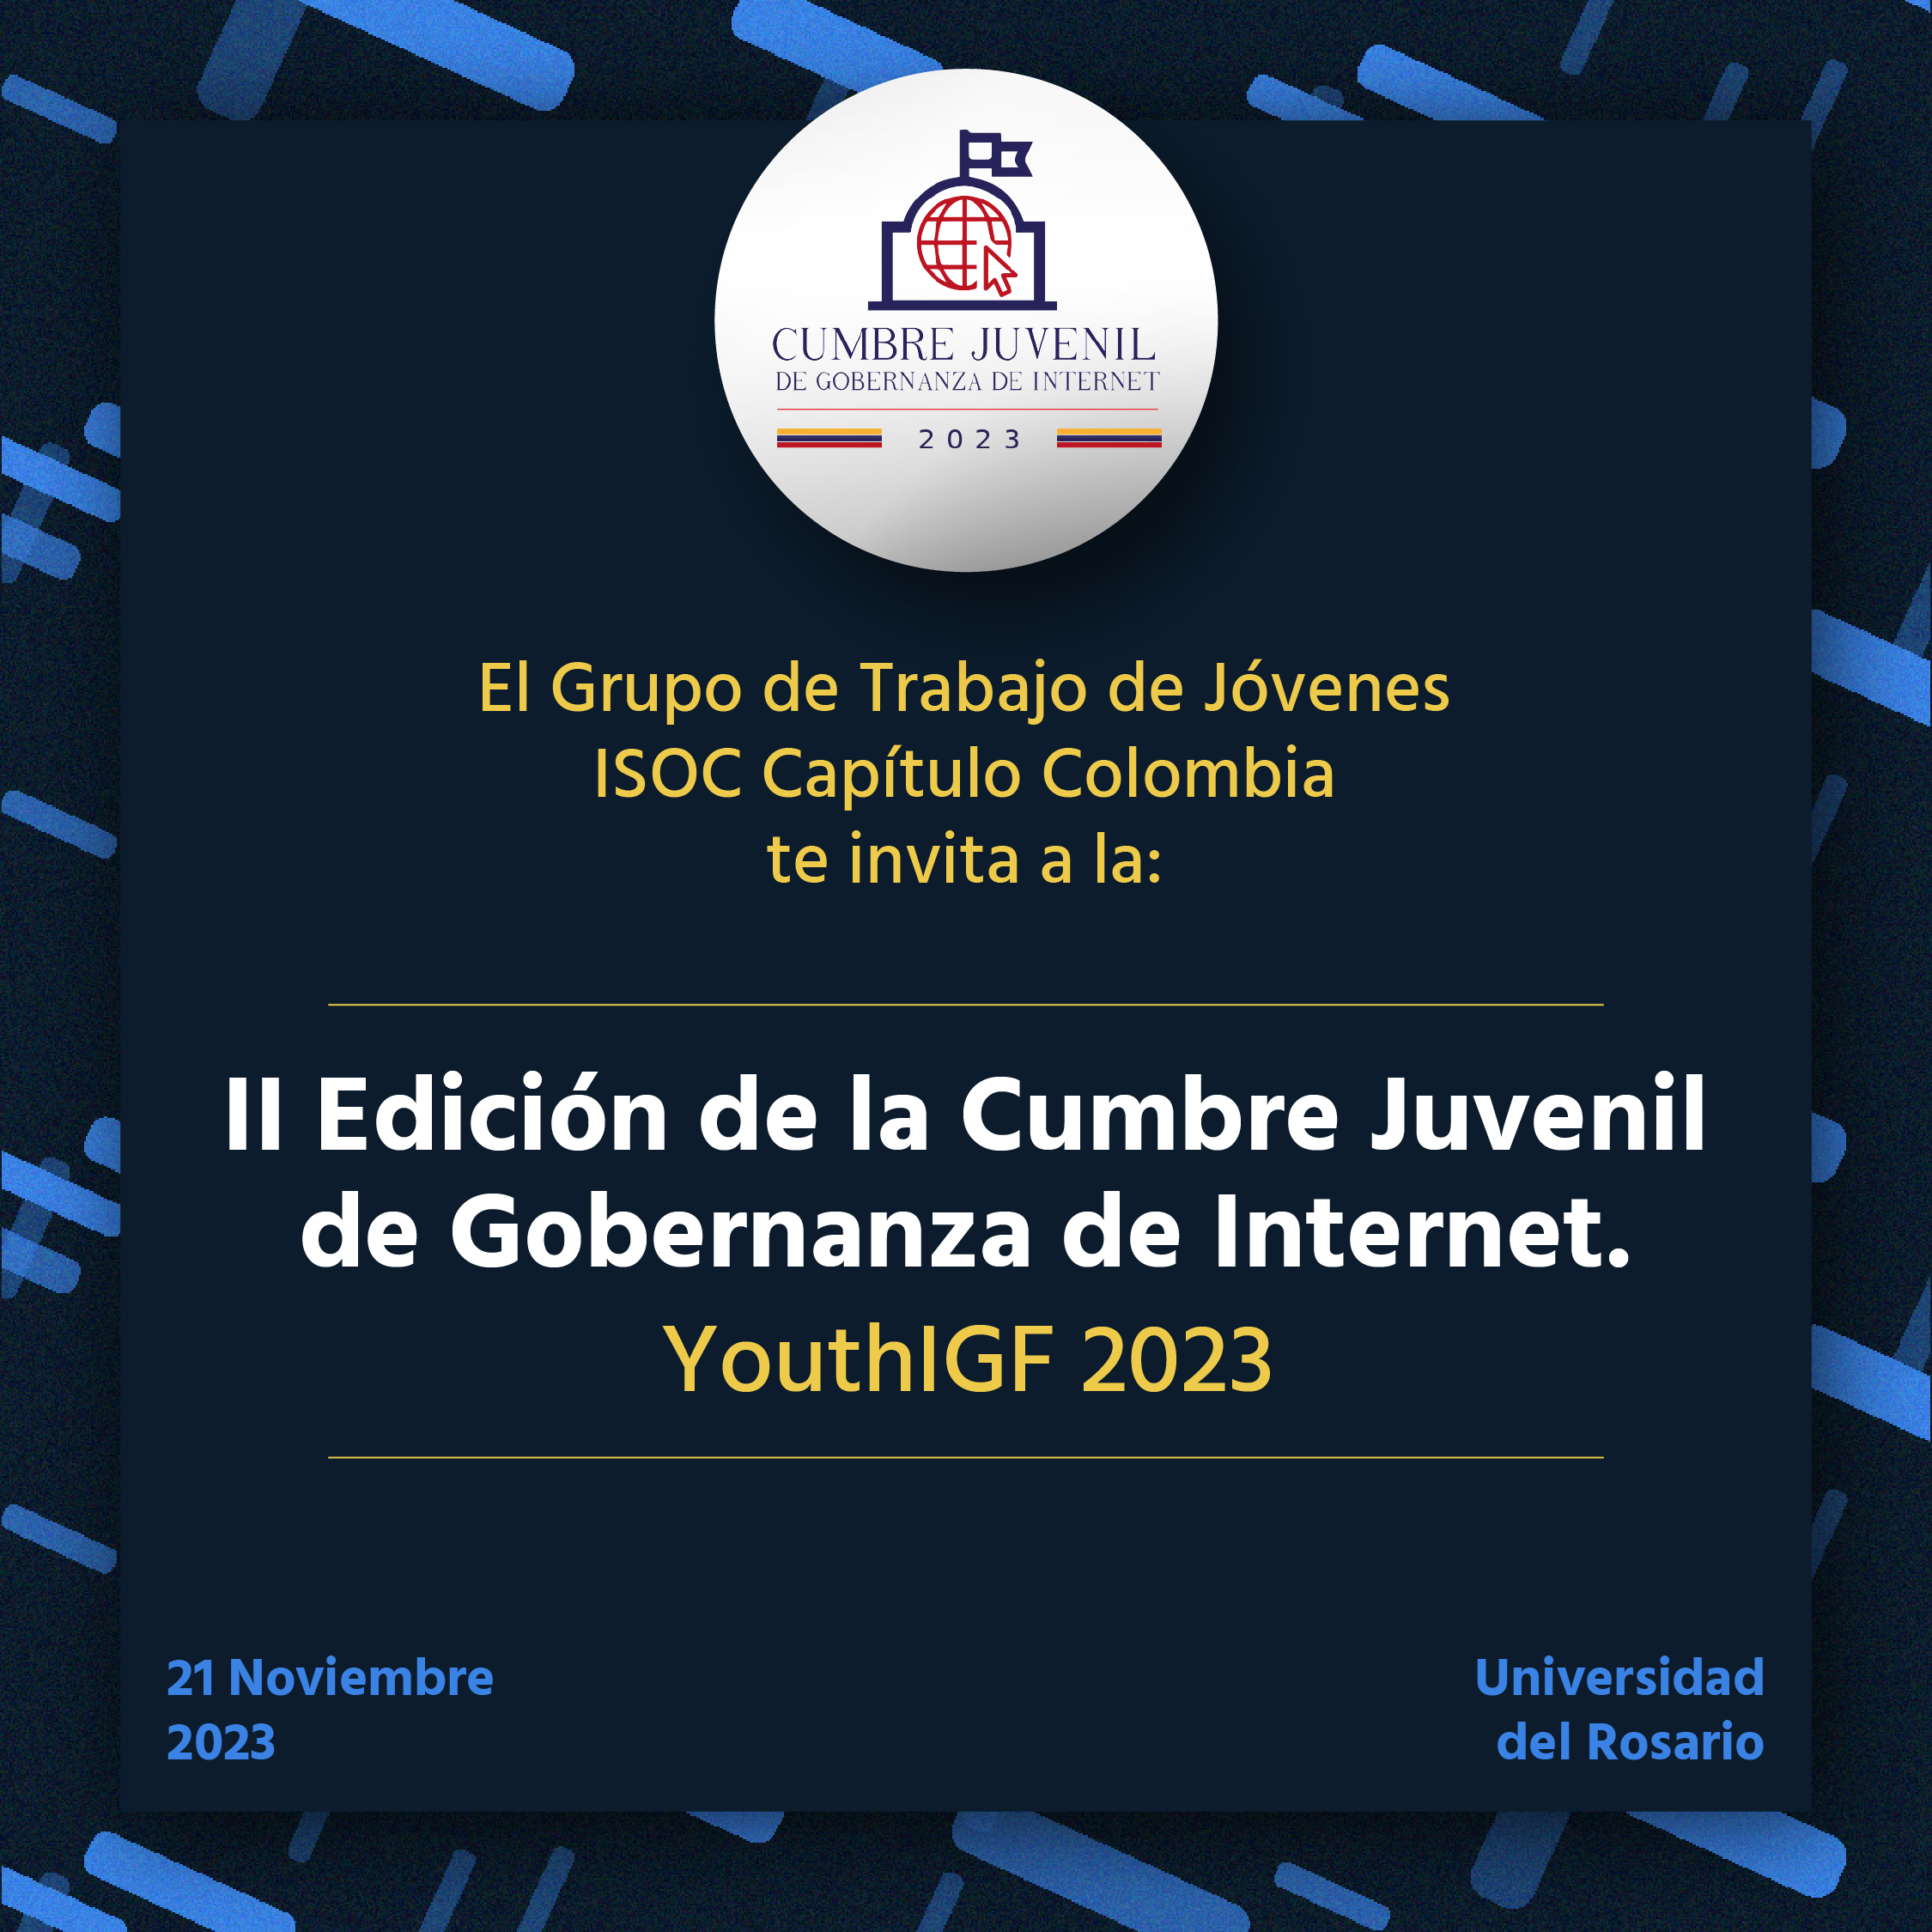 imagen alusiva a Segunda Cumbre Juvenil de Gobernanza de Internet de Colombia 